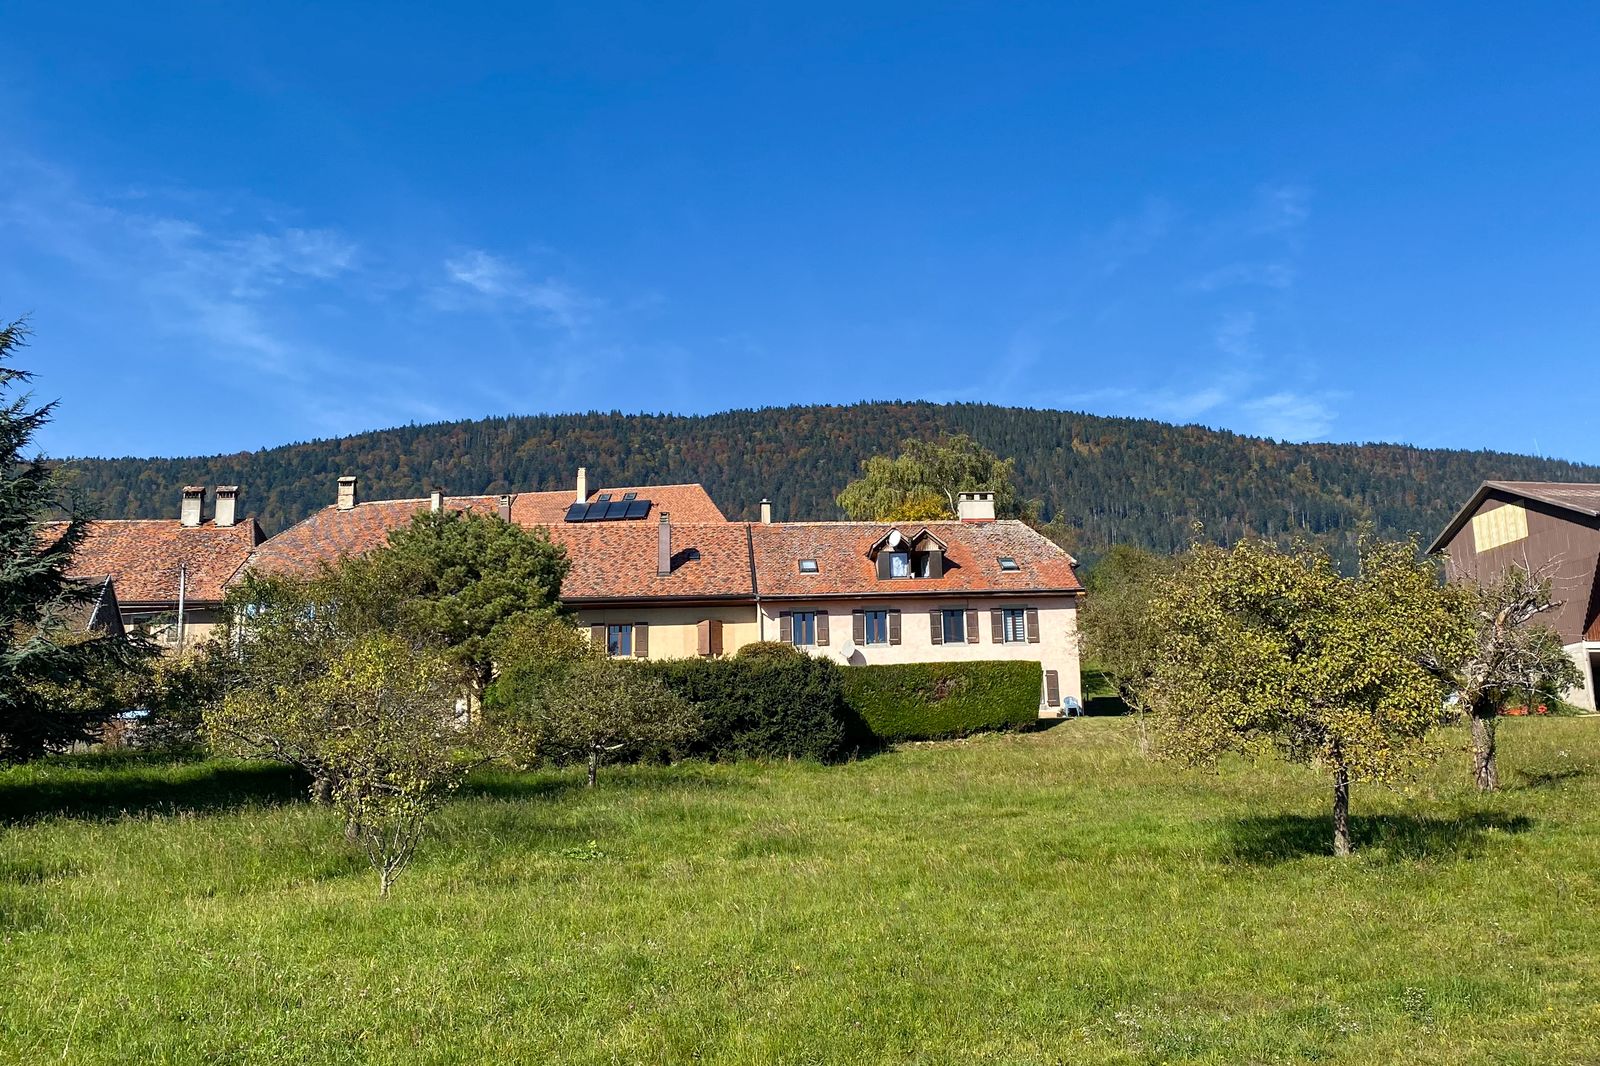 Projet immobilier à Provence avec villa à vendre, le terrain